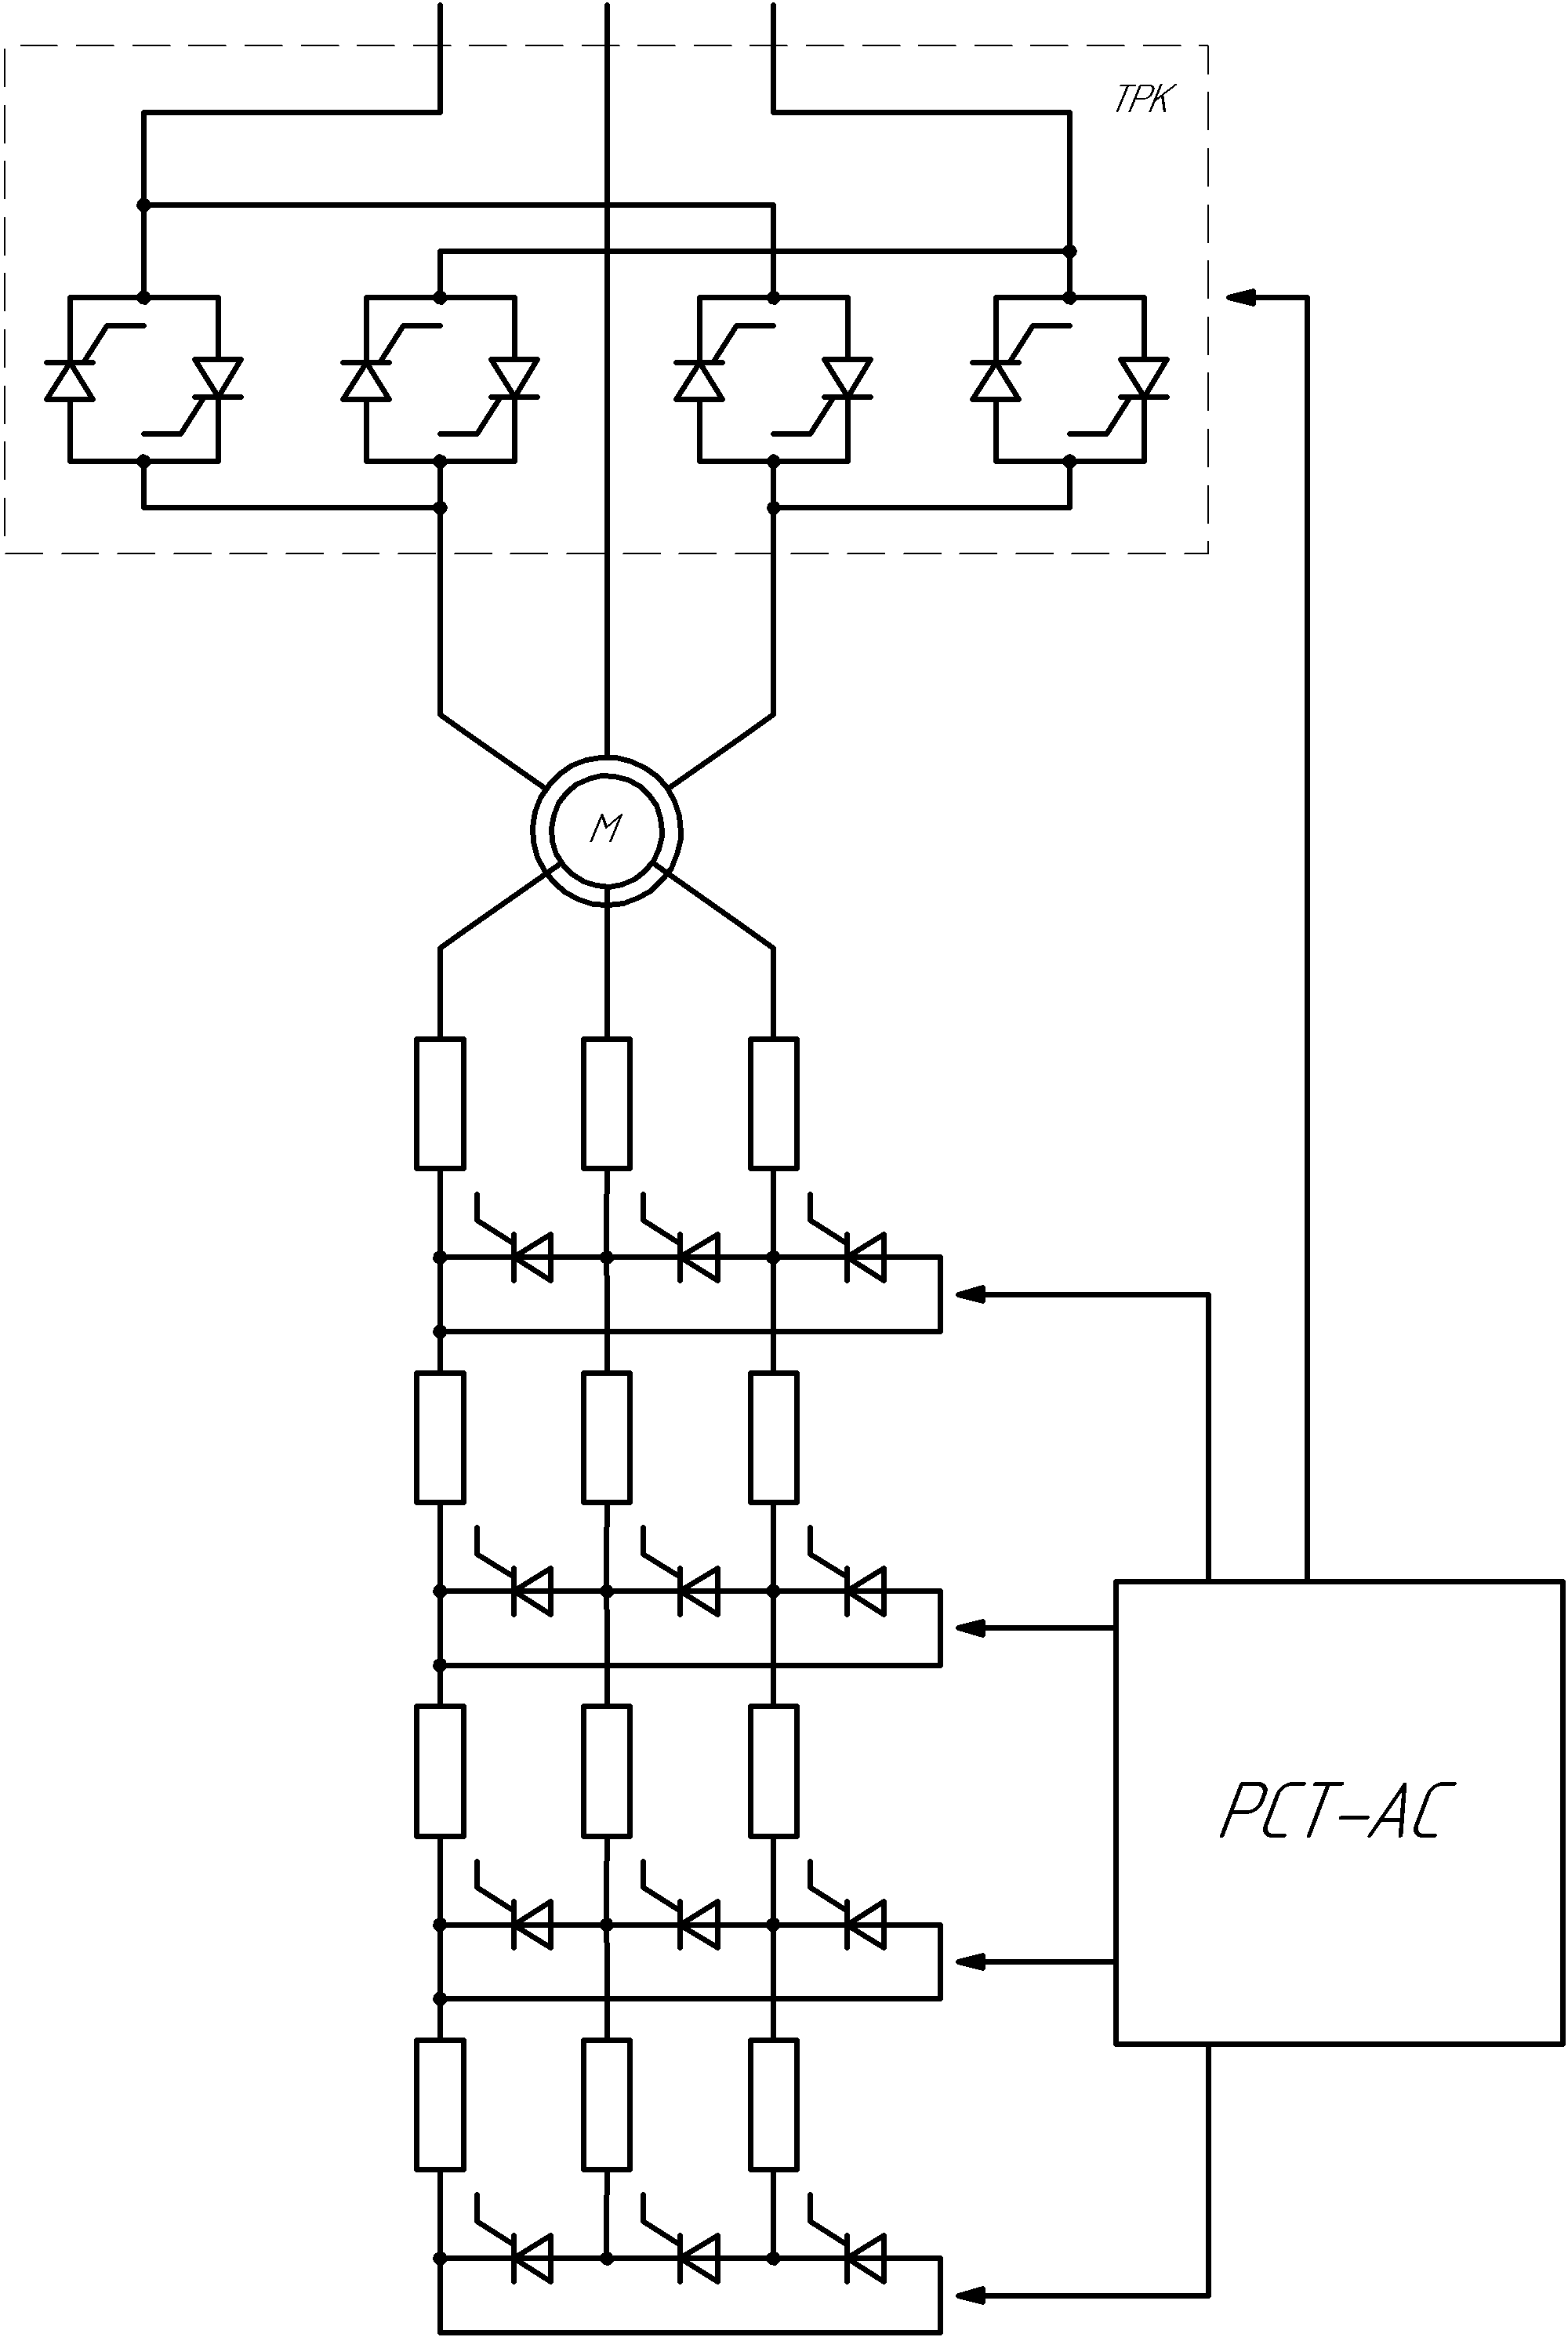 Схема функциональная тиристорной крановой панели механизма подъема